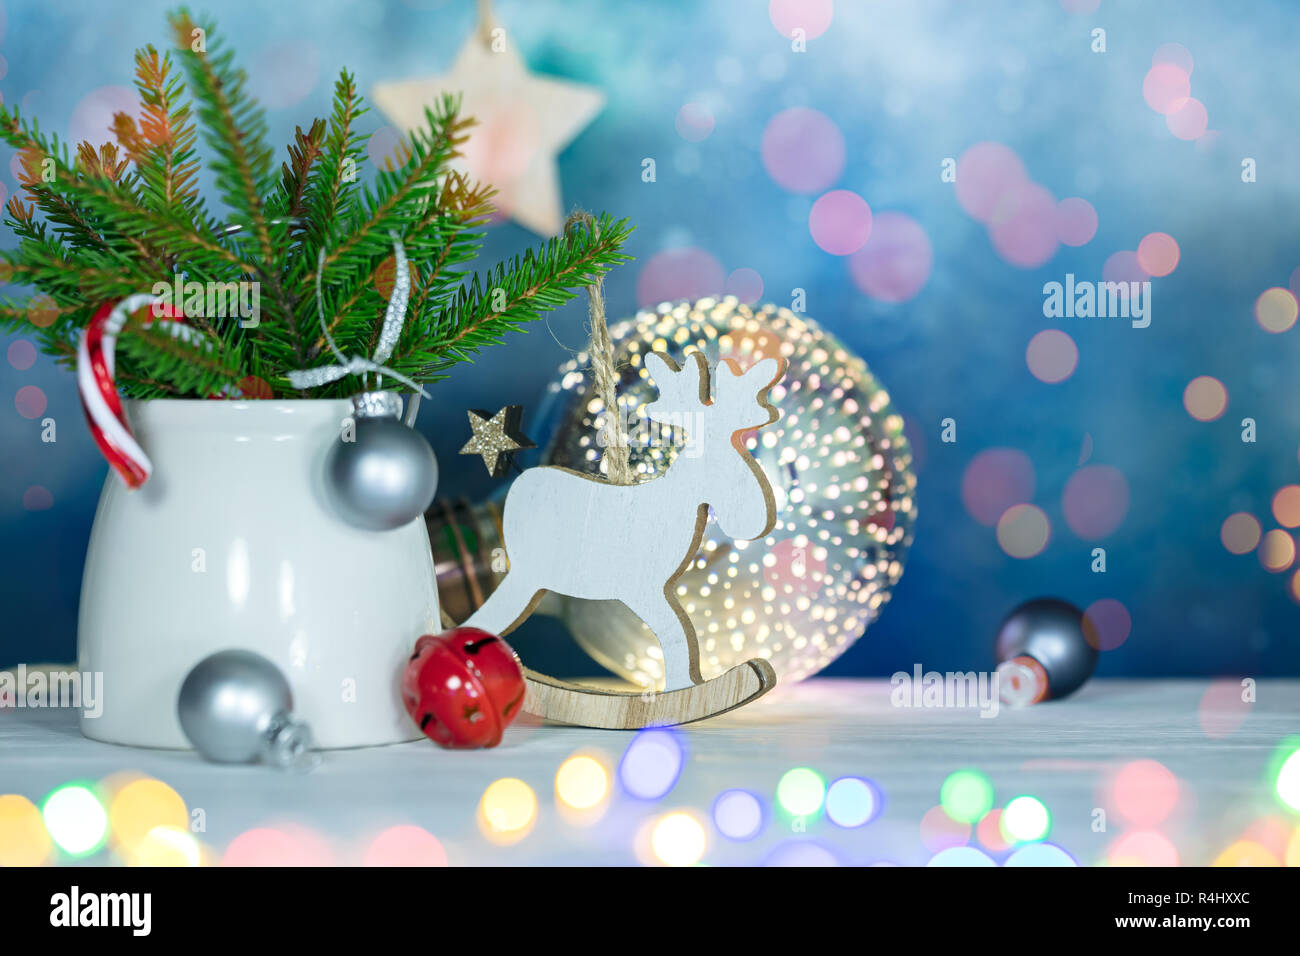 Weihnachten Konzept mit grünen Tannenbaum Äste, verschiedene neue Jahr Dekorationen und glühenden Weihnachten Girlande Lichter Stockfoto